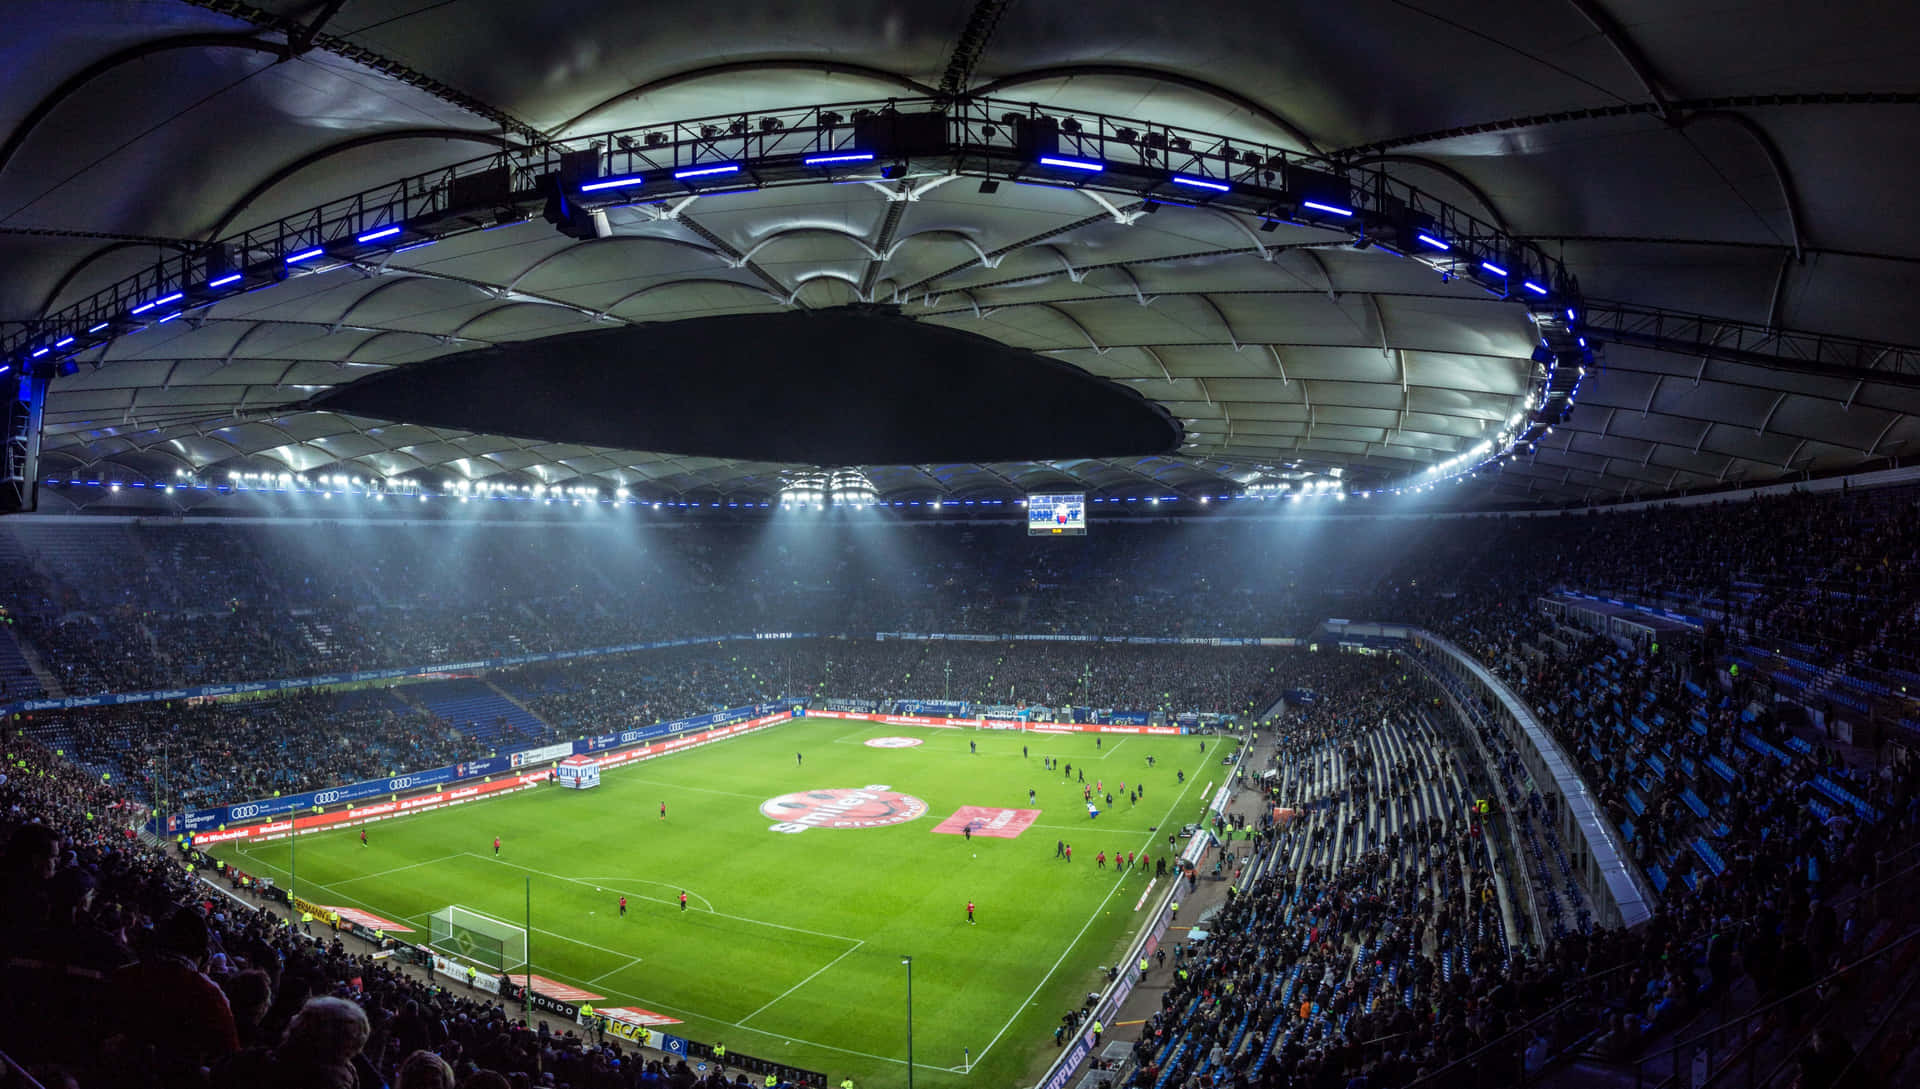 Espectacularvista De Un Estadio De Fútbol Con Luces Brillantes Por La Noche.